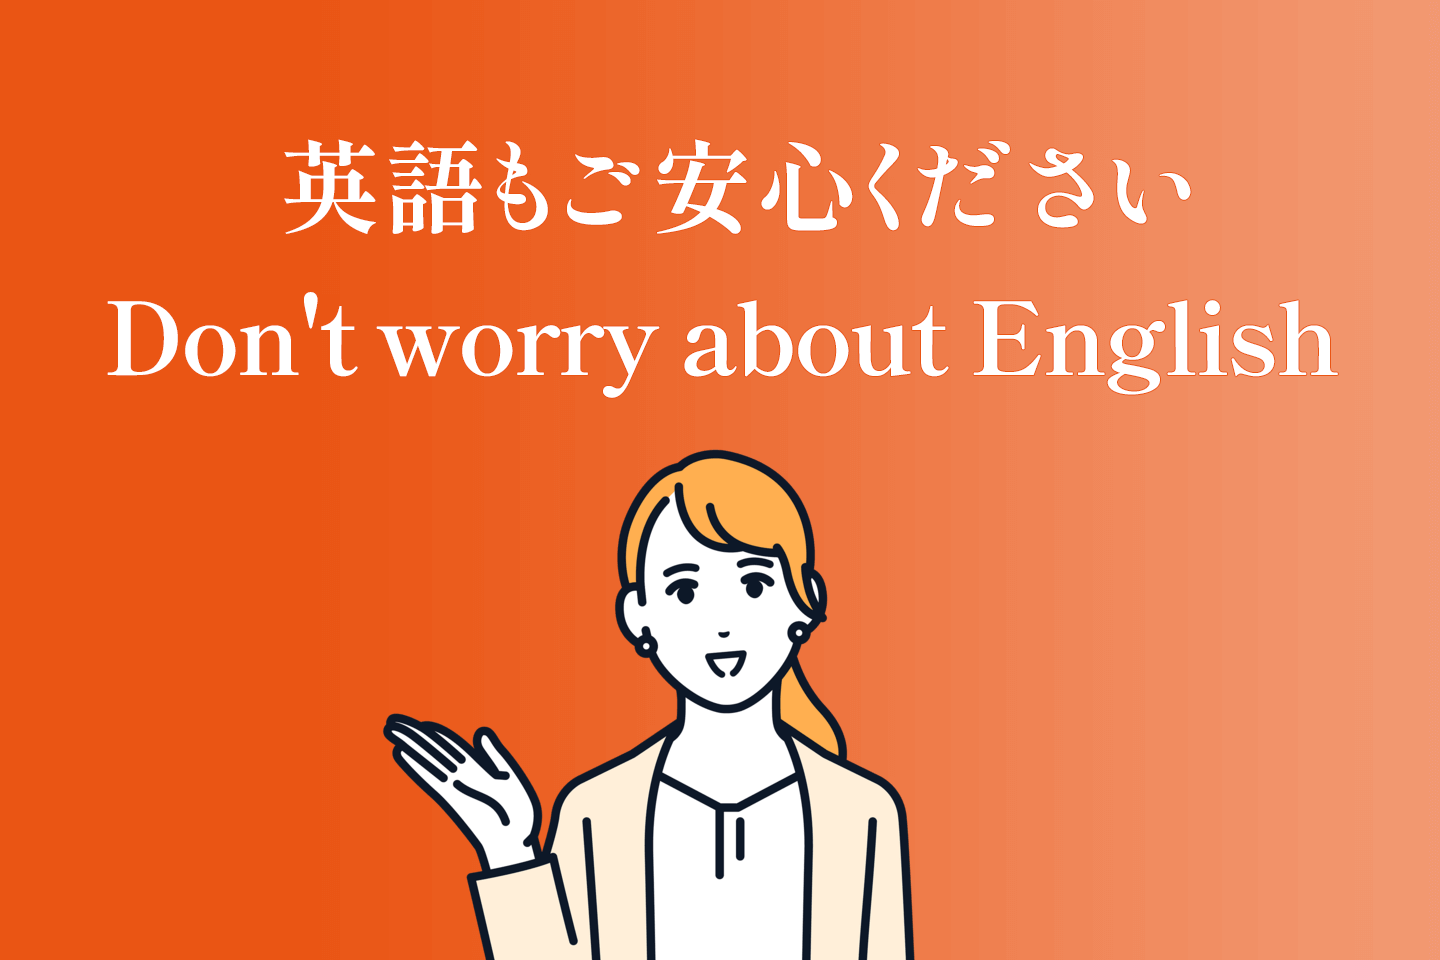 英語もご安心ください。Don't worry about English